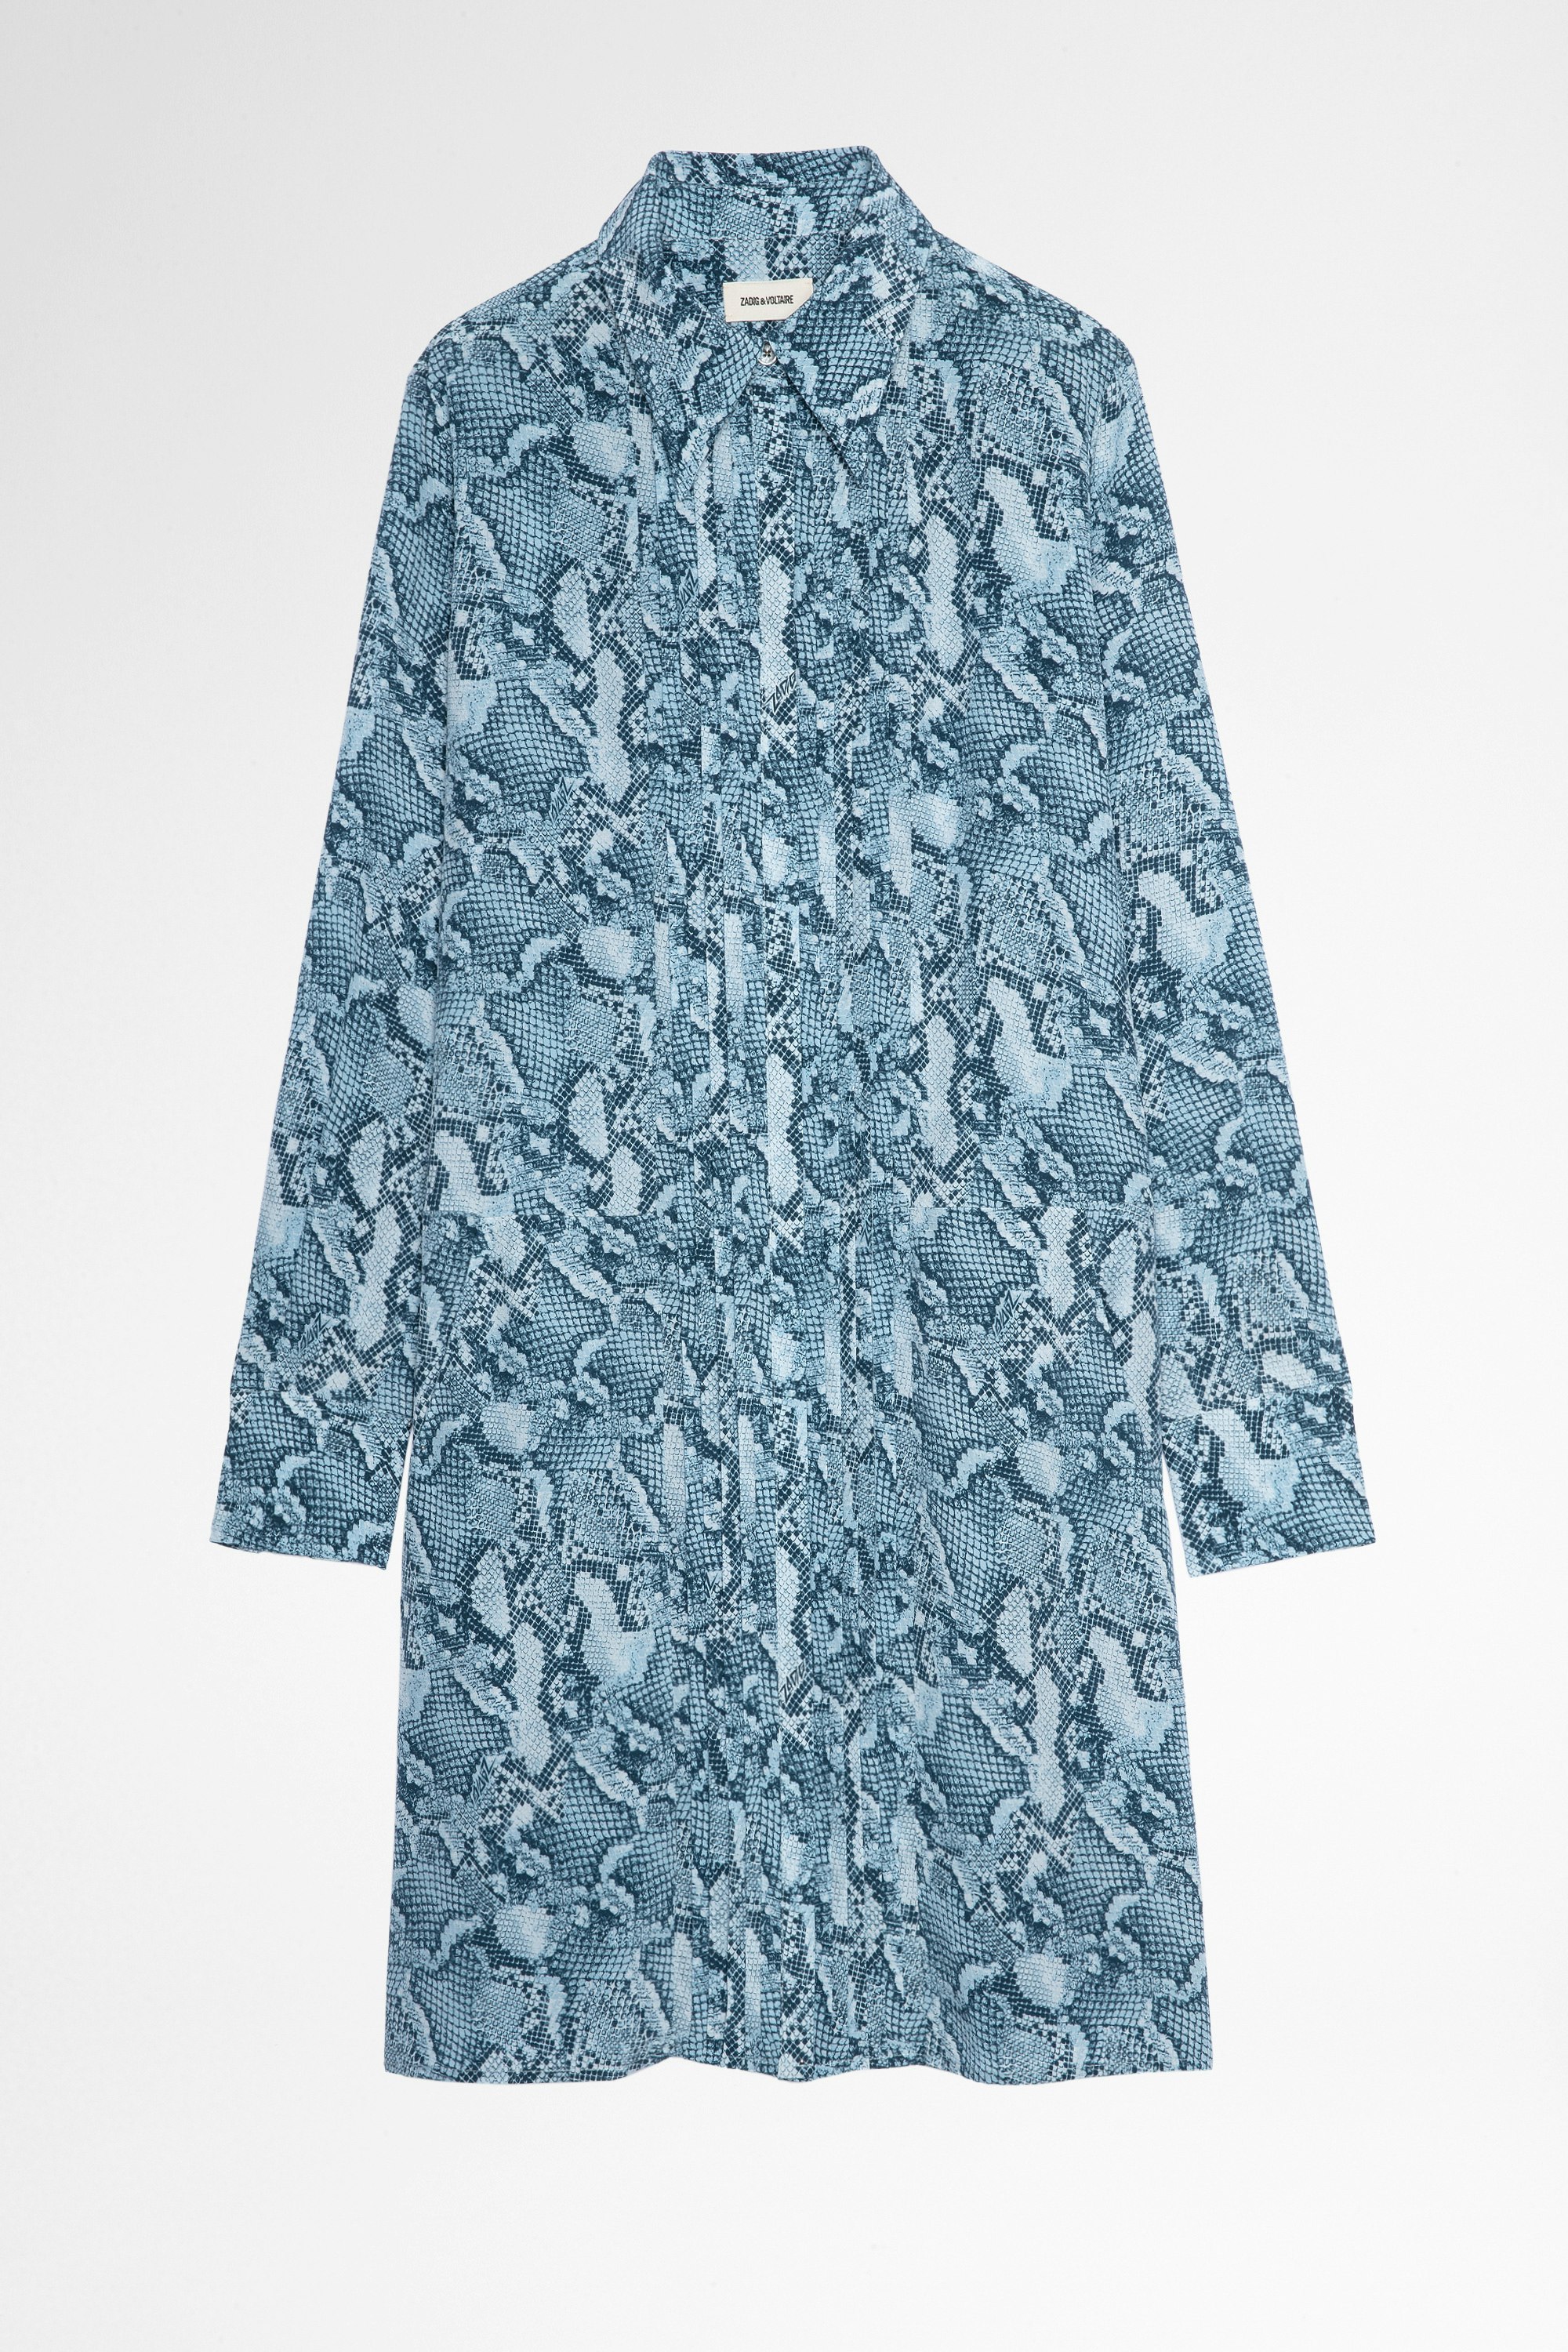 Rougi Silk Dress Women's shirt dress in blue silk with snake print